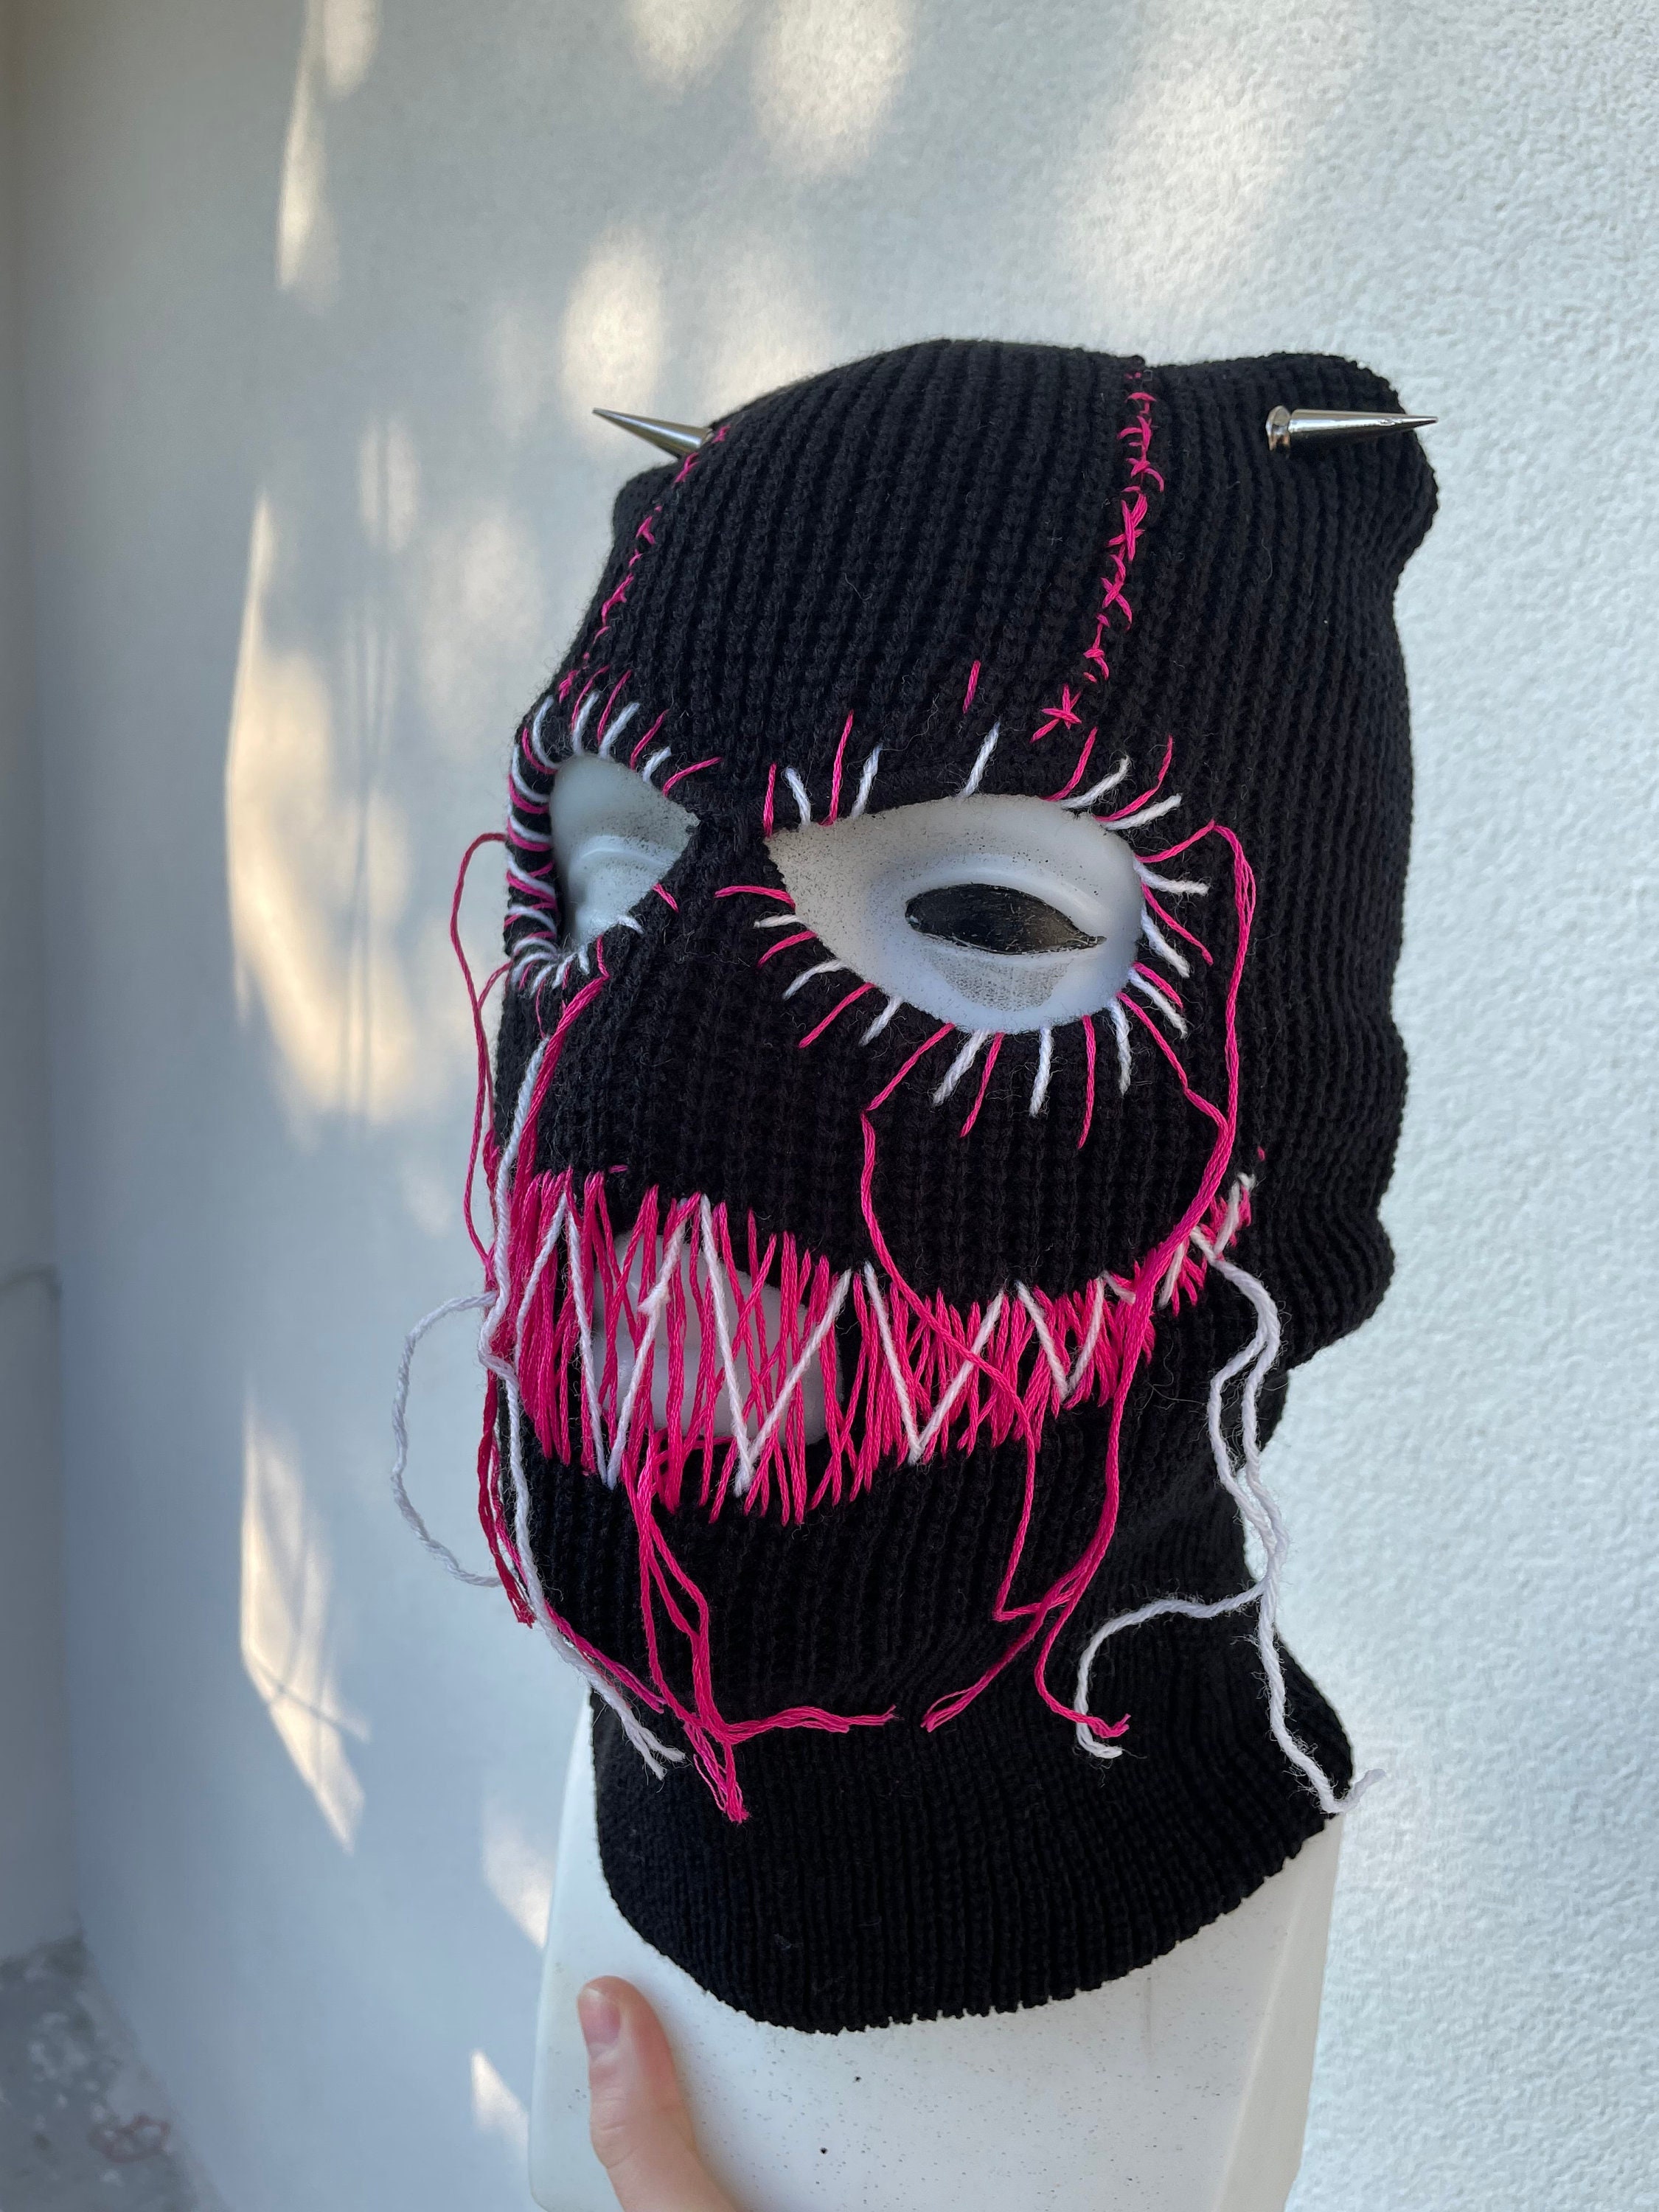 Venom Ski Mask Balaclava, Black Purple